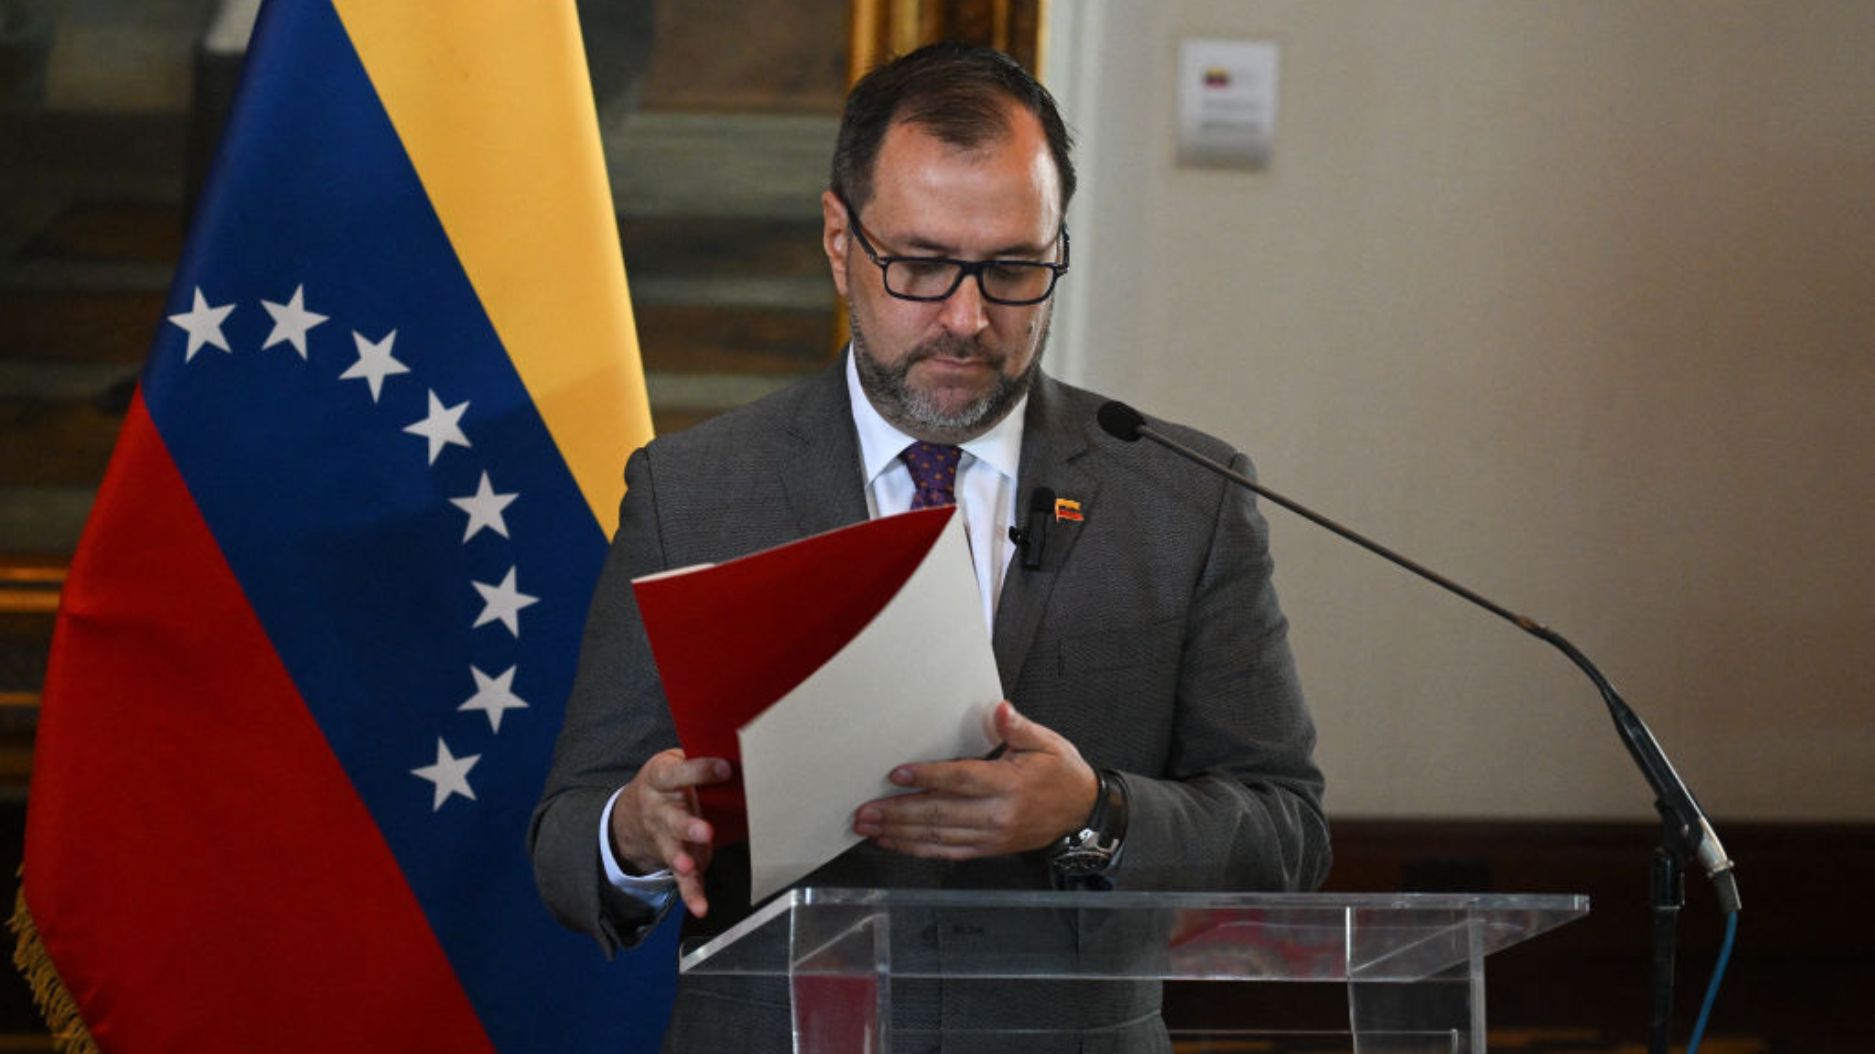 Los cancilleres de Colombia y Venezuela se reunirán este lunes tras
impasse bilateral por comentarios sobre elecciones